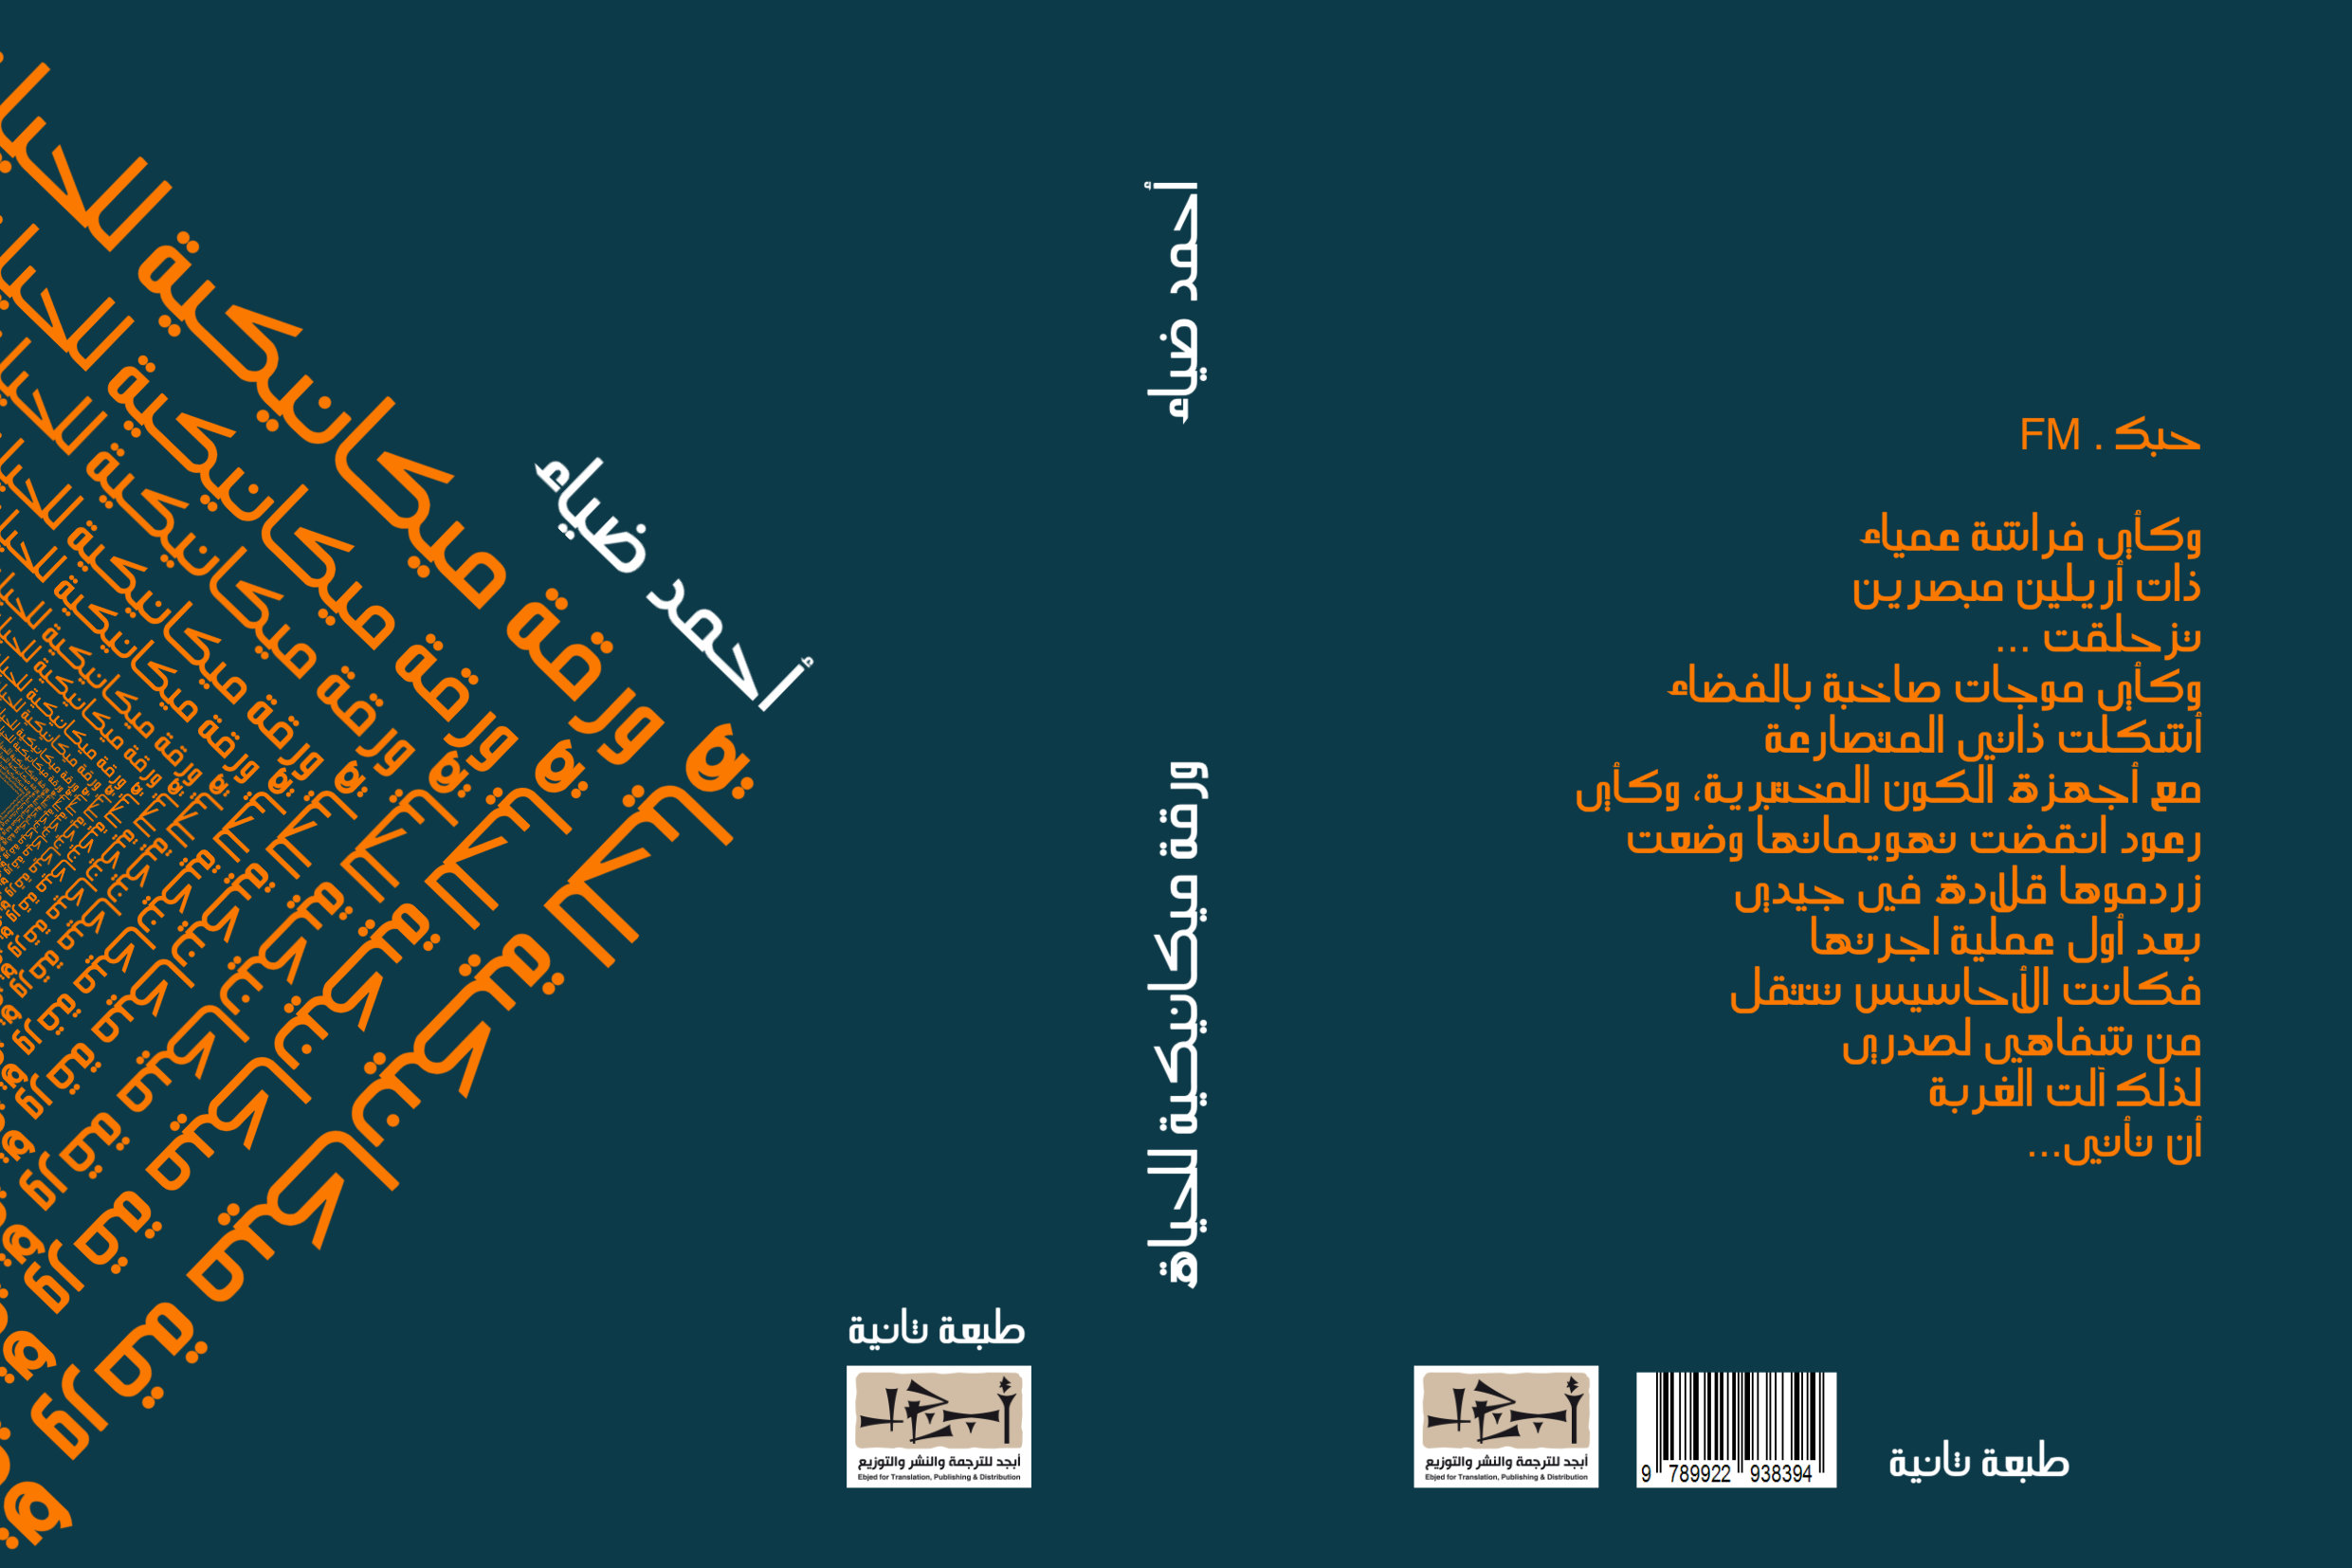 ديوان ورقة ميكانيكة للحياة تأليف: د. احمد ضياء - الطبعة الثانية